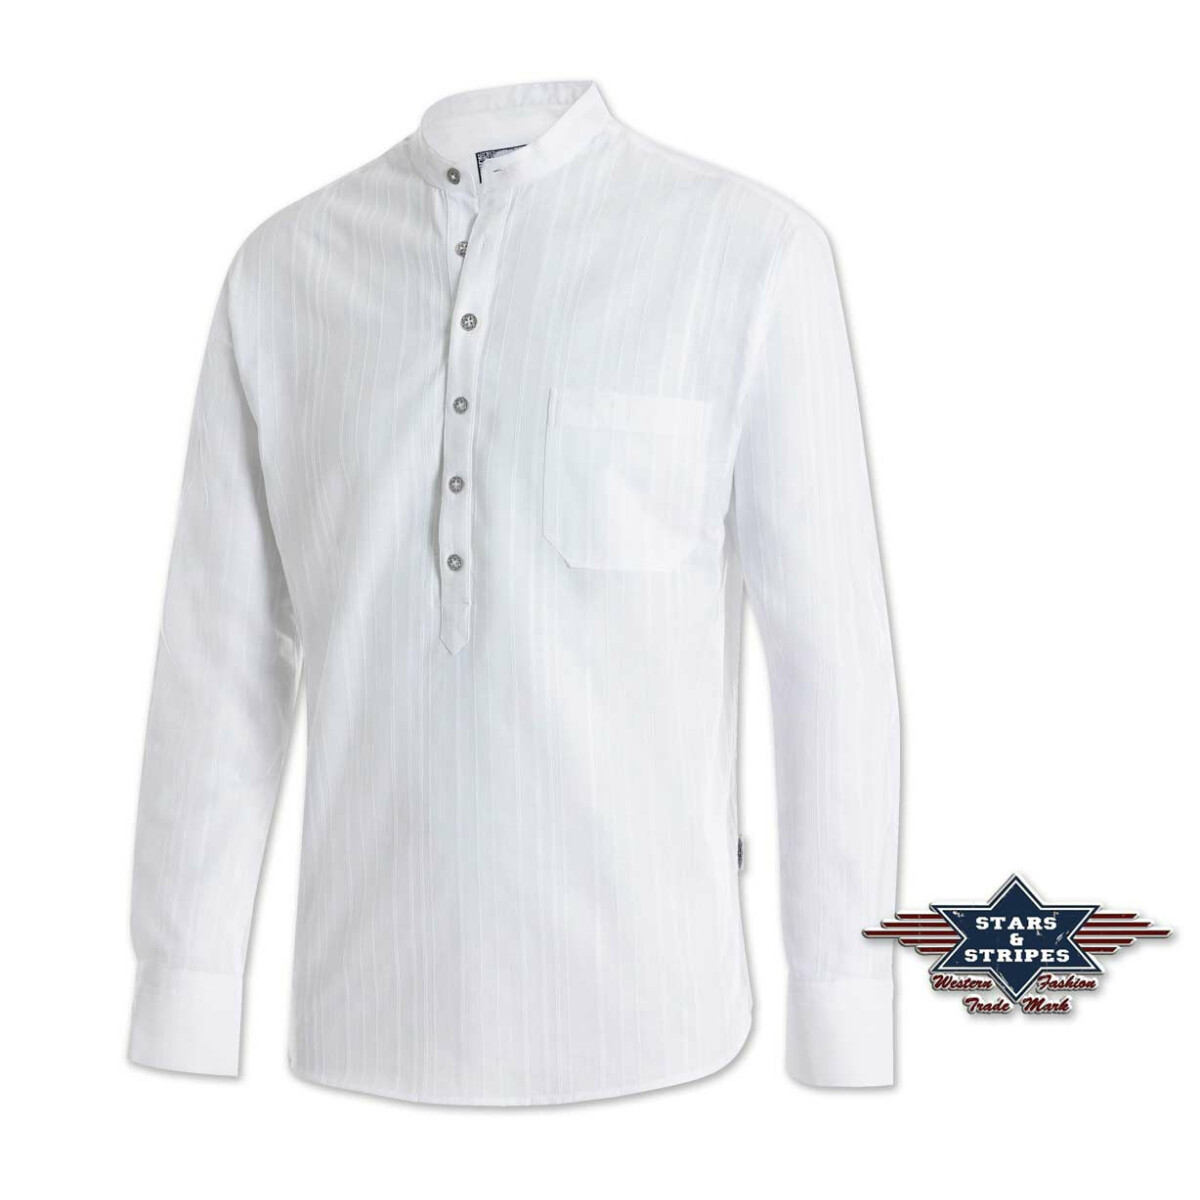 Oldstyle Shirt, Westernhemd, Stehkragenhemd Farmer" v. Stars&Stripes S" von Stars & Stripes